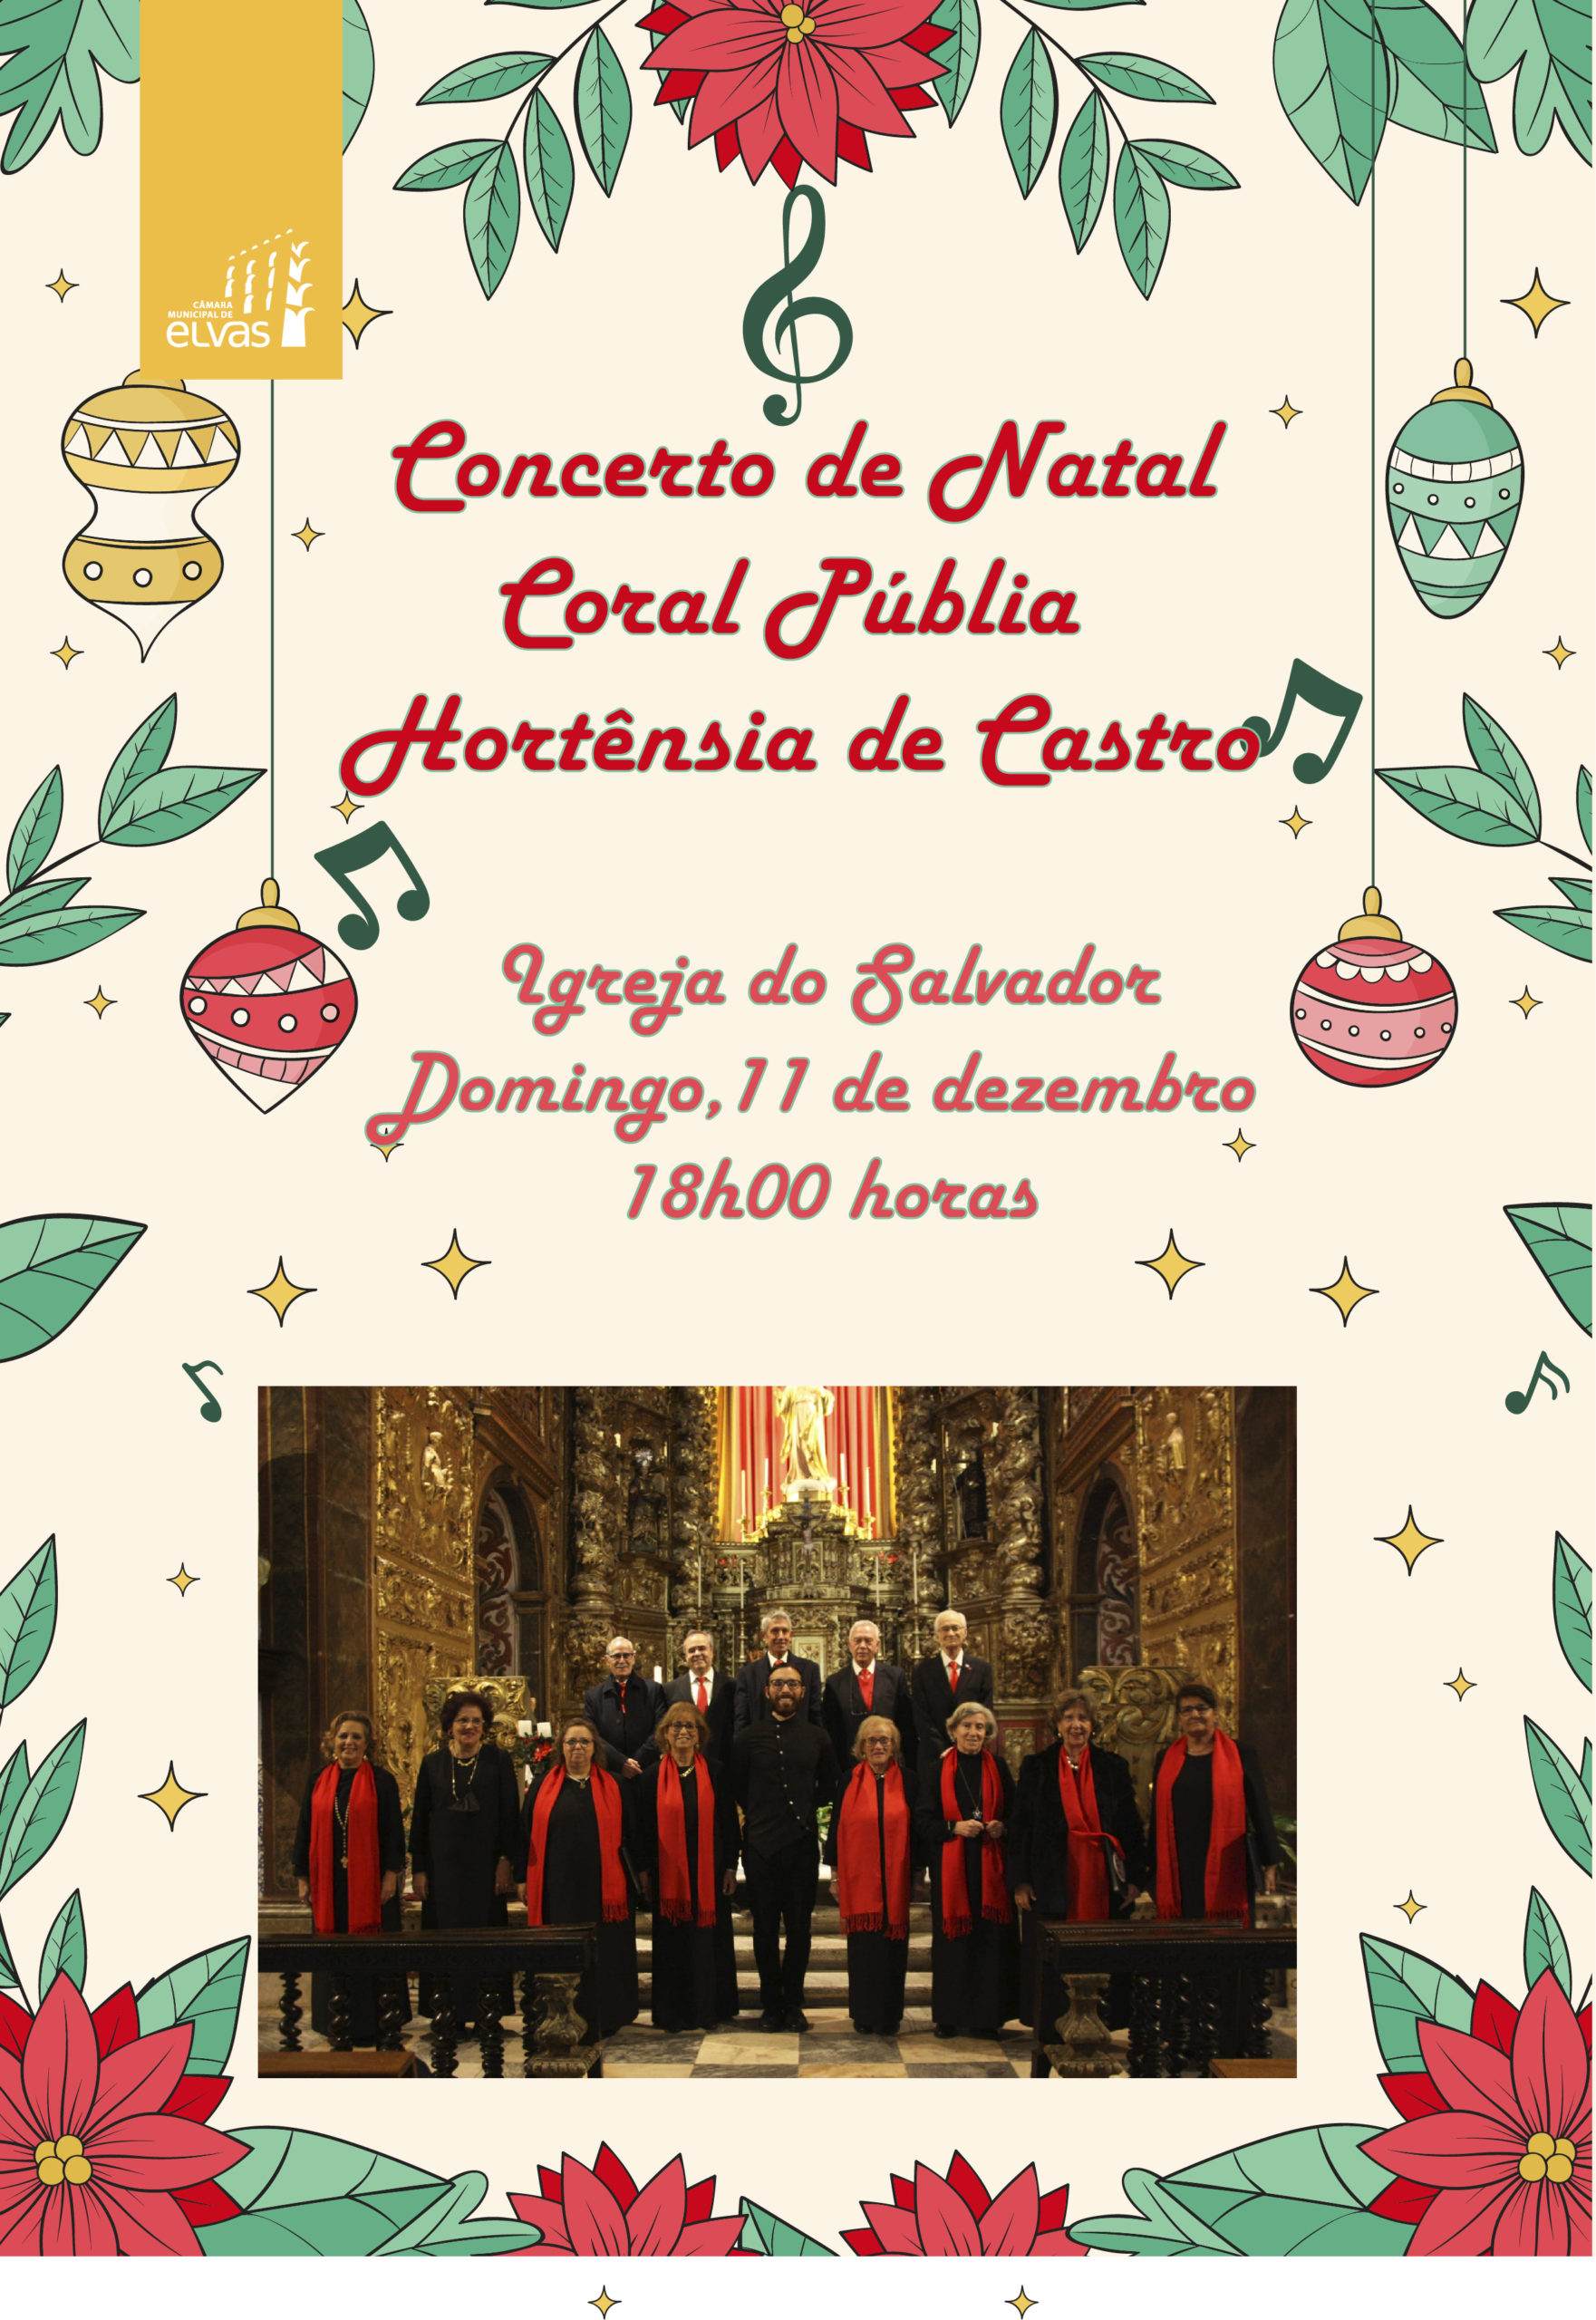 Concerto de Natal do Coral Públia Hortênsia de Castro - Município de Elvas